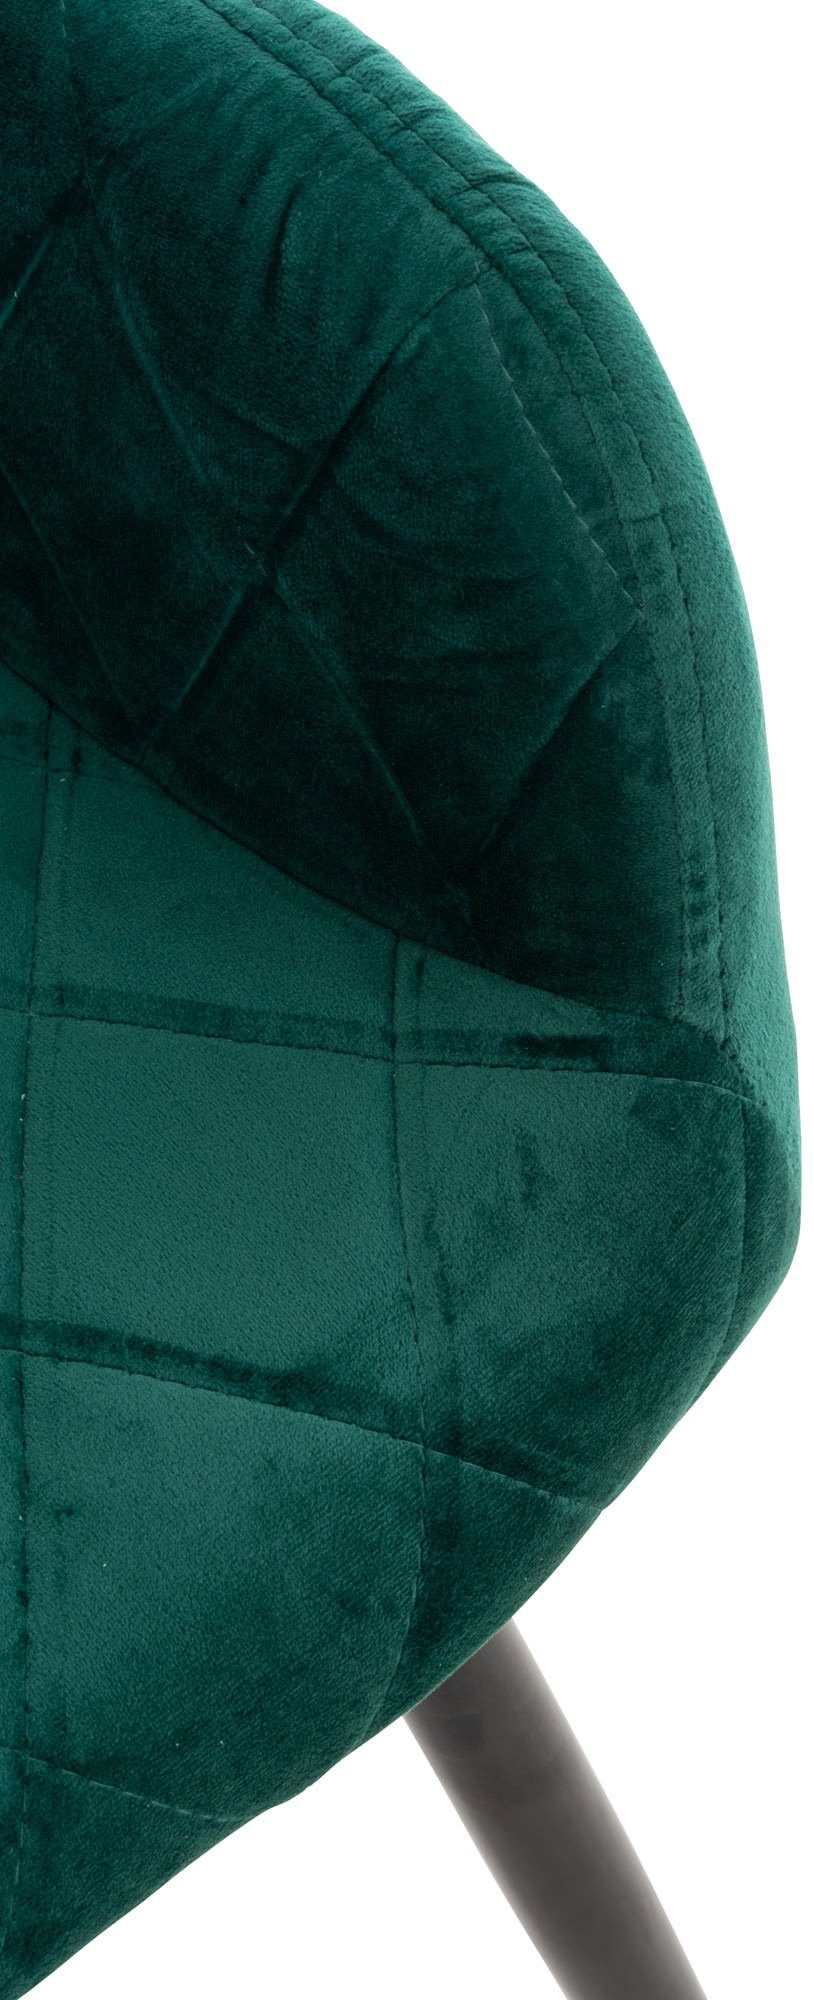 gepolsterter mit Metall - Sitzfläche - Esstischstuhl Esszimmerstuhl - Samt TPFLiving Konferenzstuhl (Küchenstuhl - grün Polsterstuhl), Sitzfläche: schwarz Gestell: Shyva hochwertig - Wohnzimmerstuhl